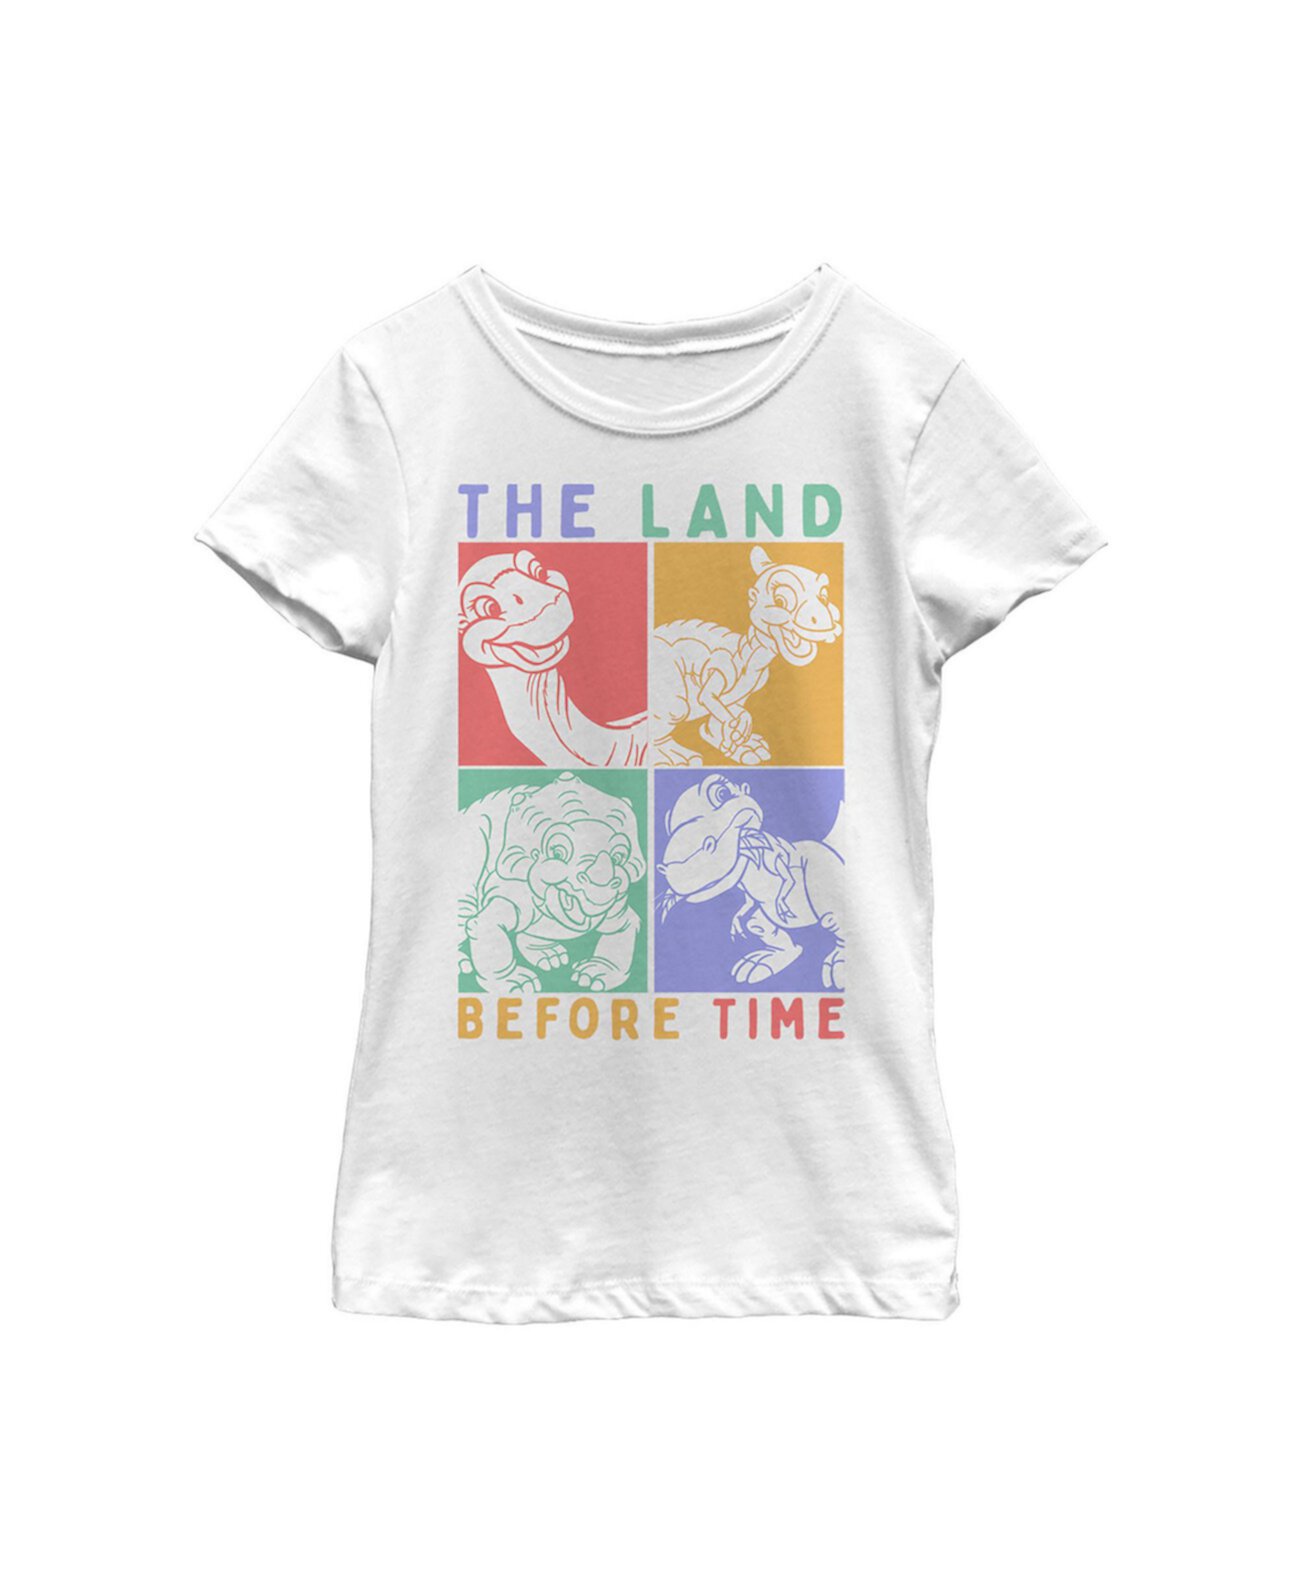 Детская футболка с квадратами динозавров «Земля до начала времён» для девочек NBC Universal